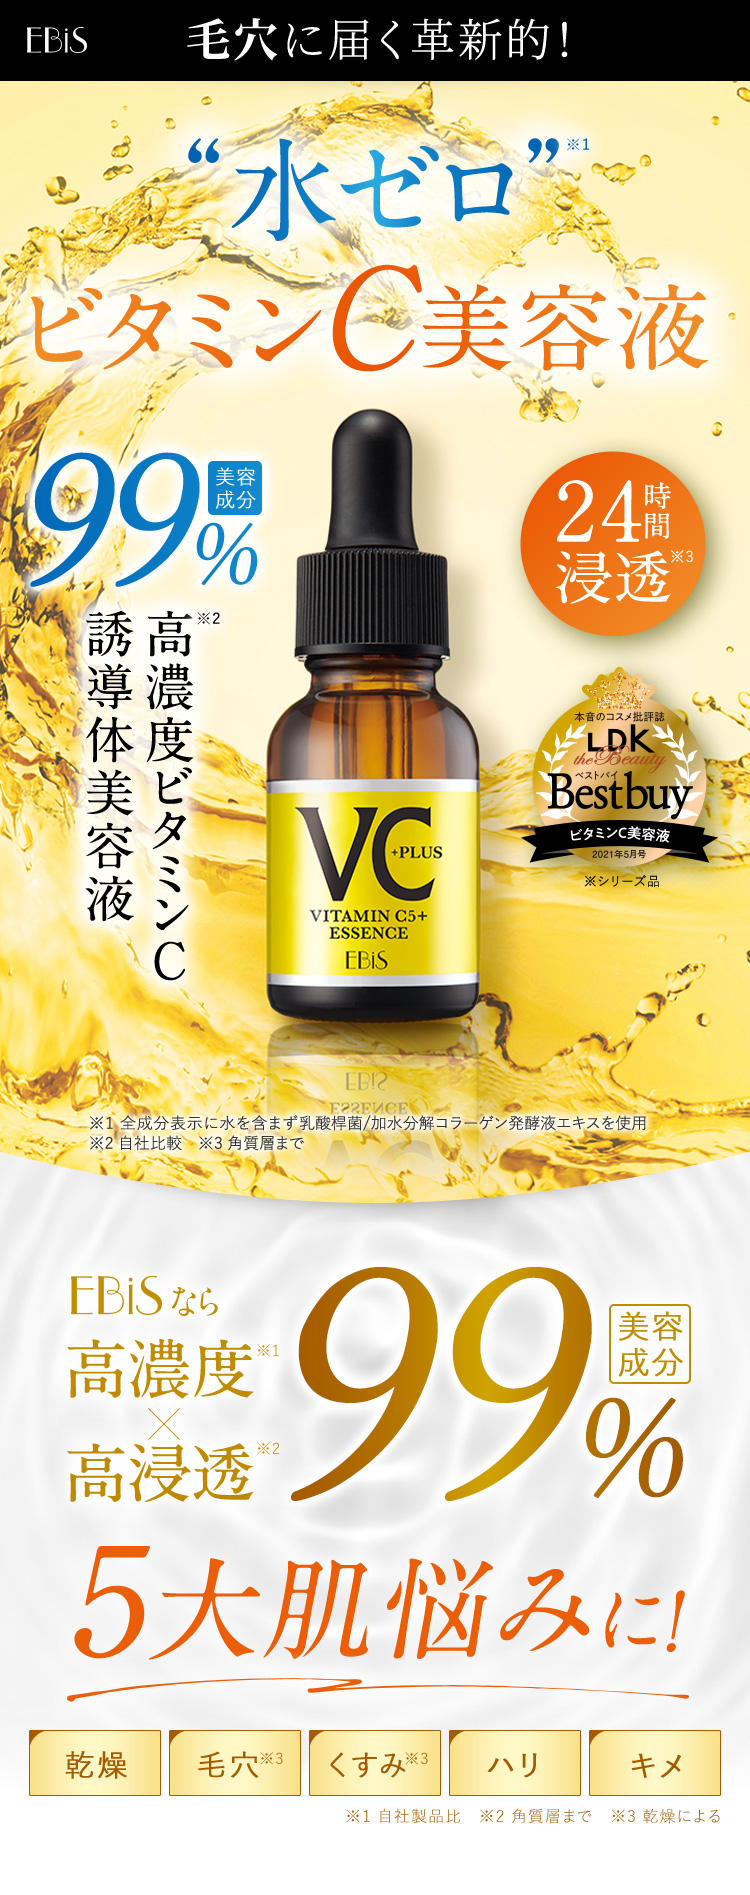 【楽天市場】毛穴 美容液 ビタミンc美容液 エビス cエッセンス VC5+ 